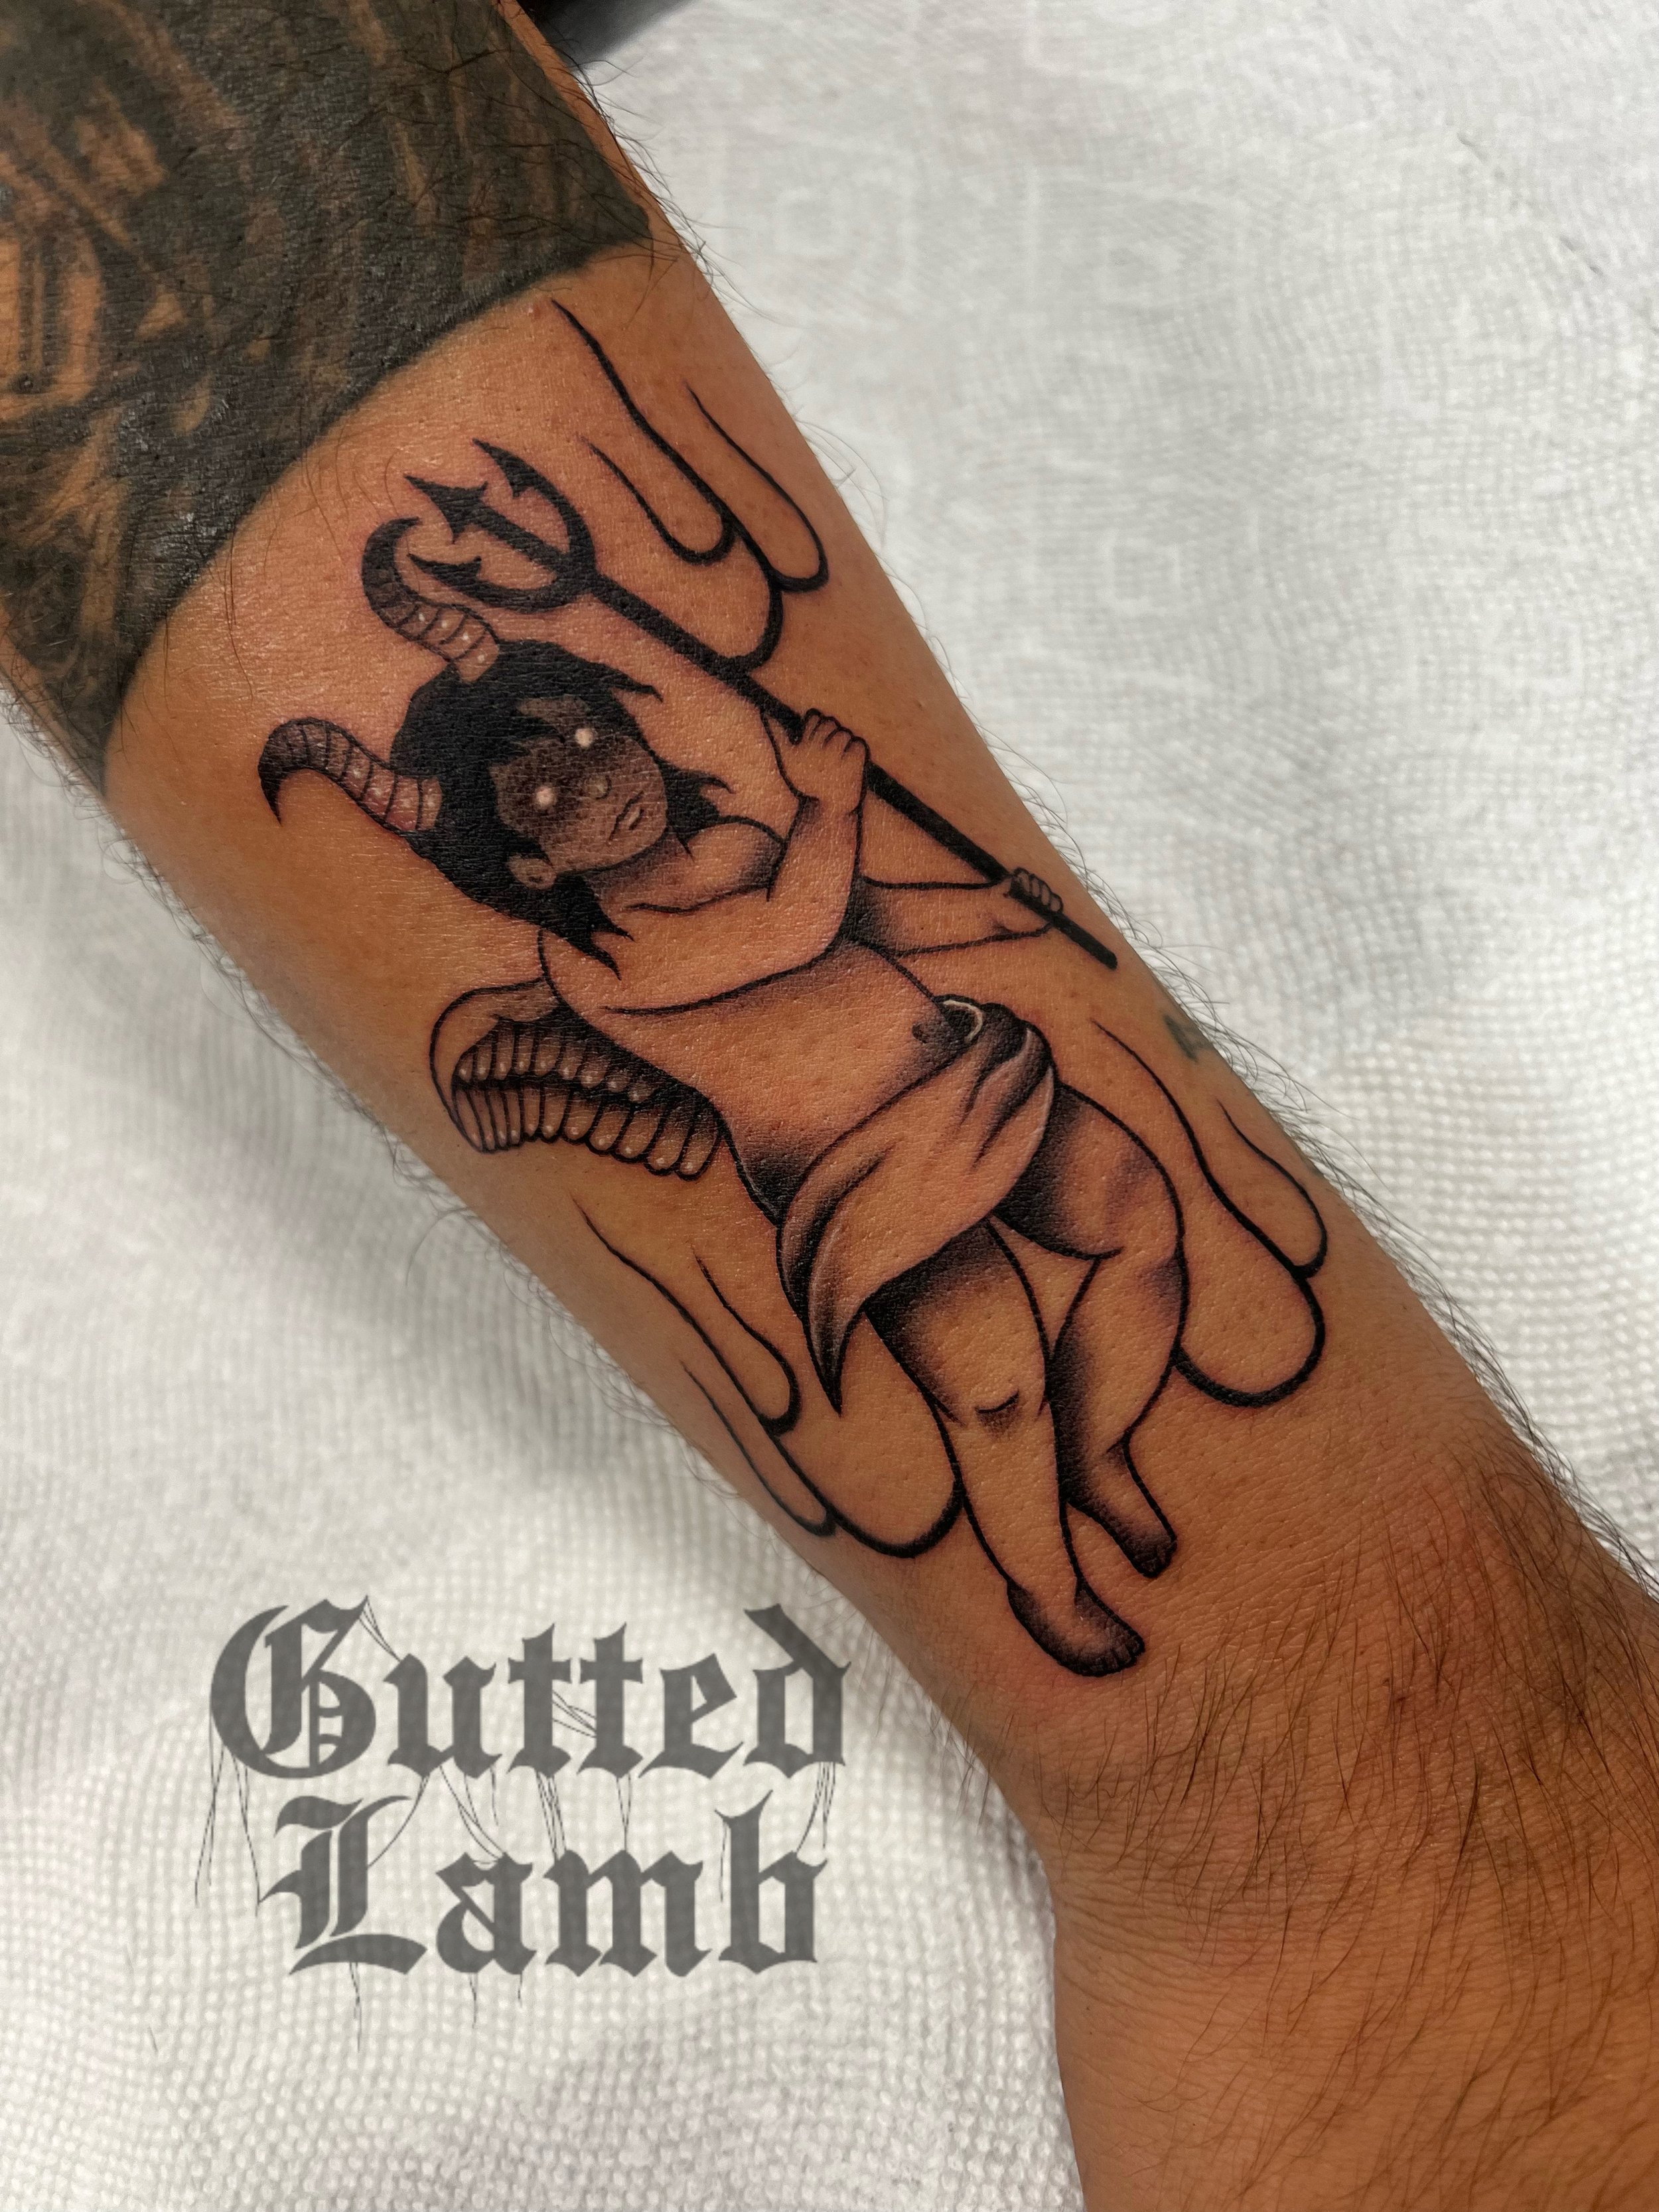 Lion tattoo for his son tattooartist tattoo fyp edits houstonta   TikTok